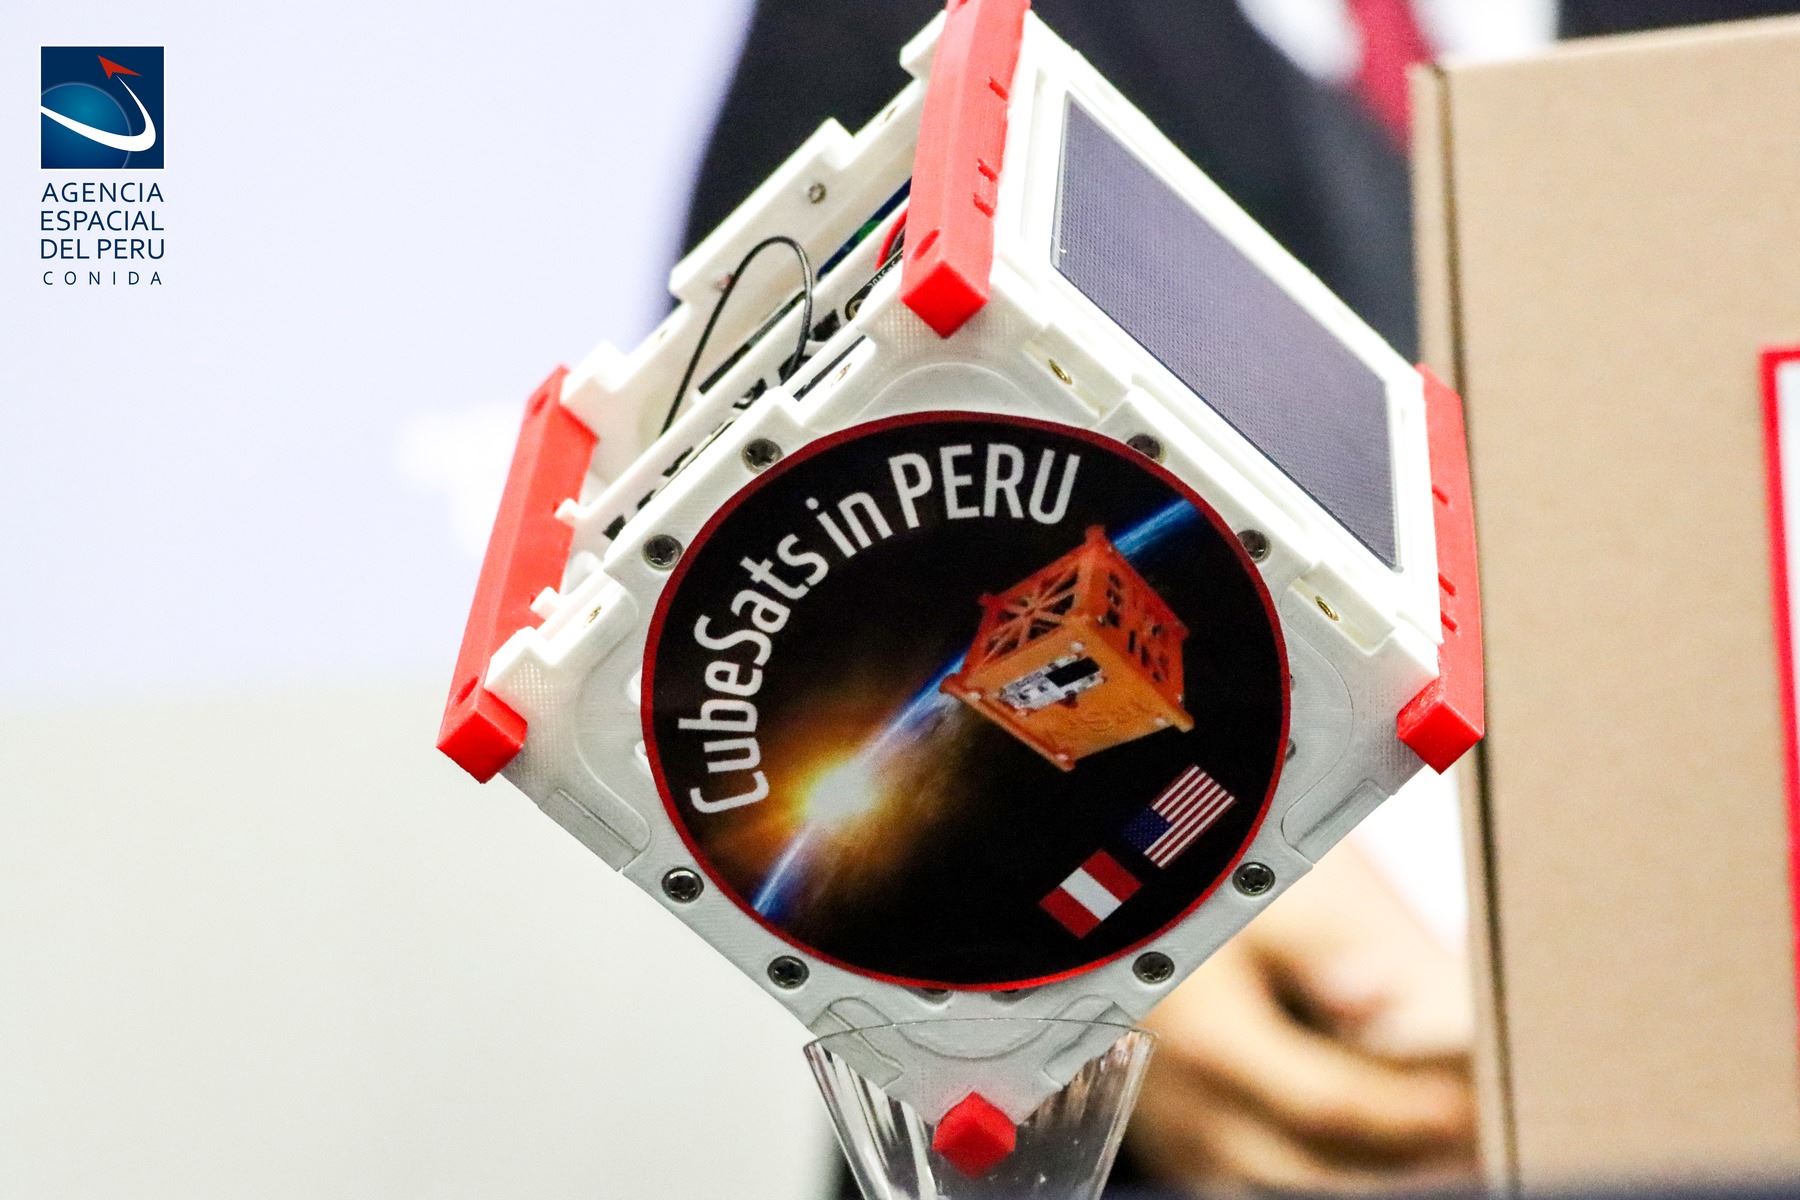 El proyecto CubeSats in Perú se desarrolla gracias a la participación y el esfuerzo de importantes organizaciones como la Agencia Espacial del Perú - CONIDA, One Voice 4 Change, ENGITRONIC y STEAM World.